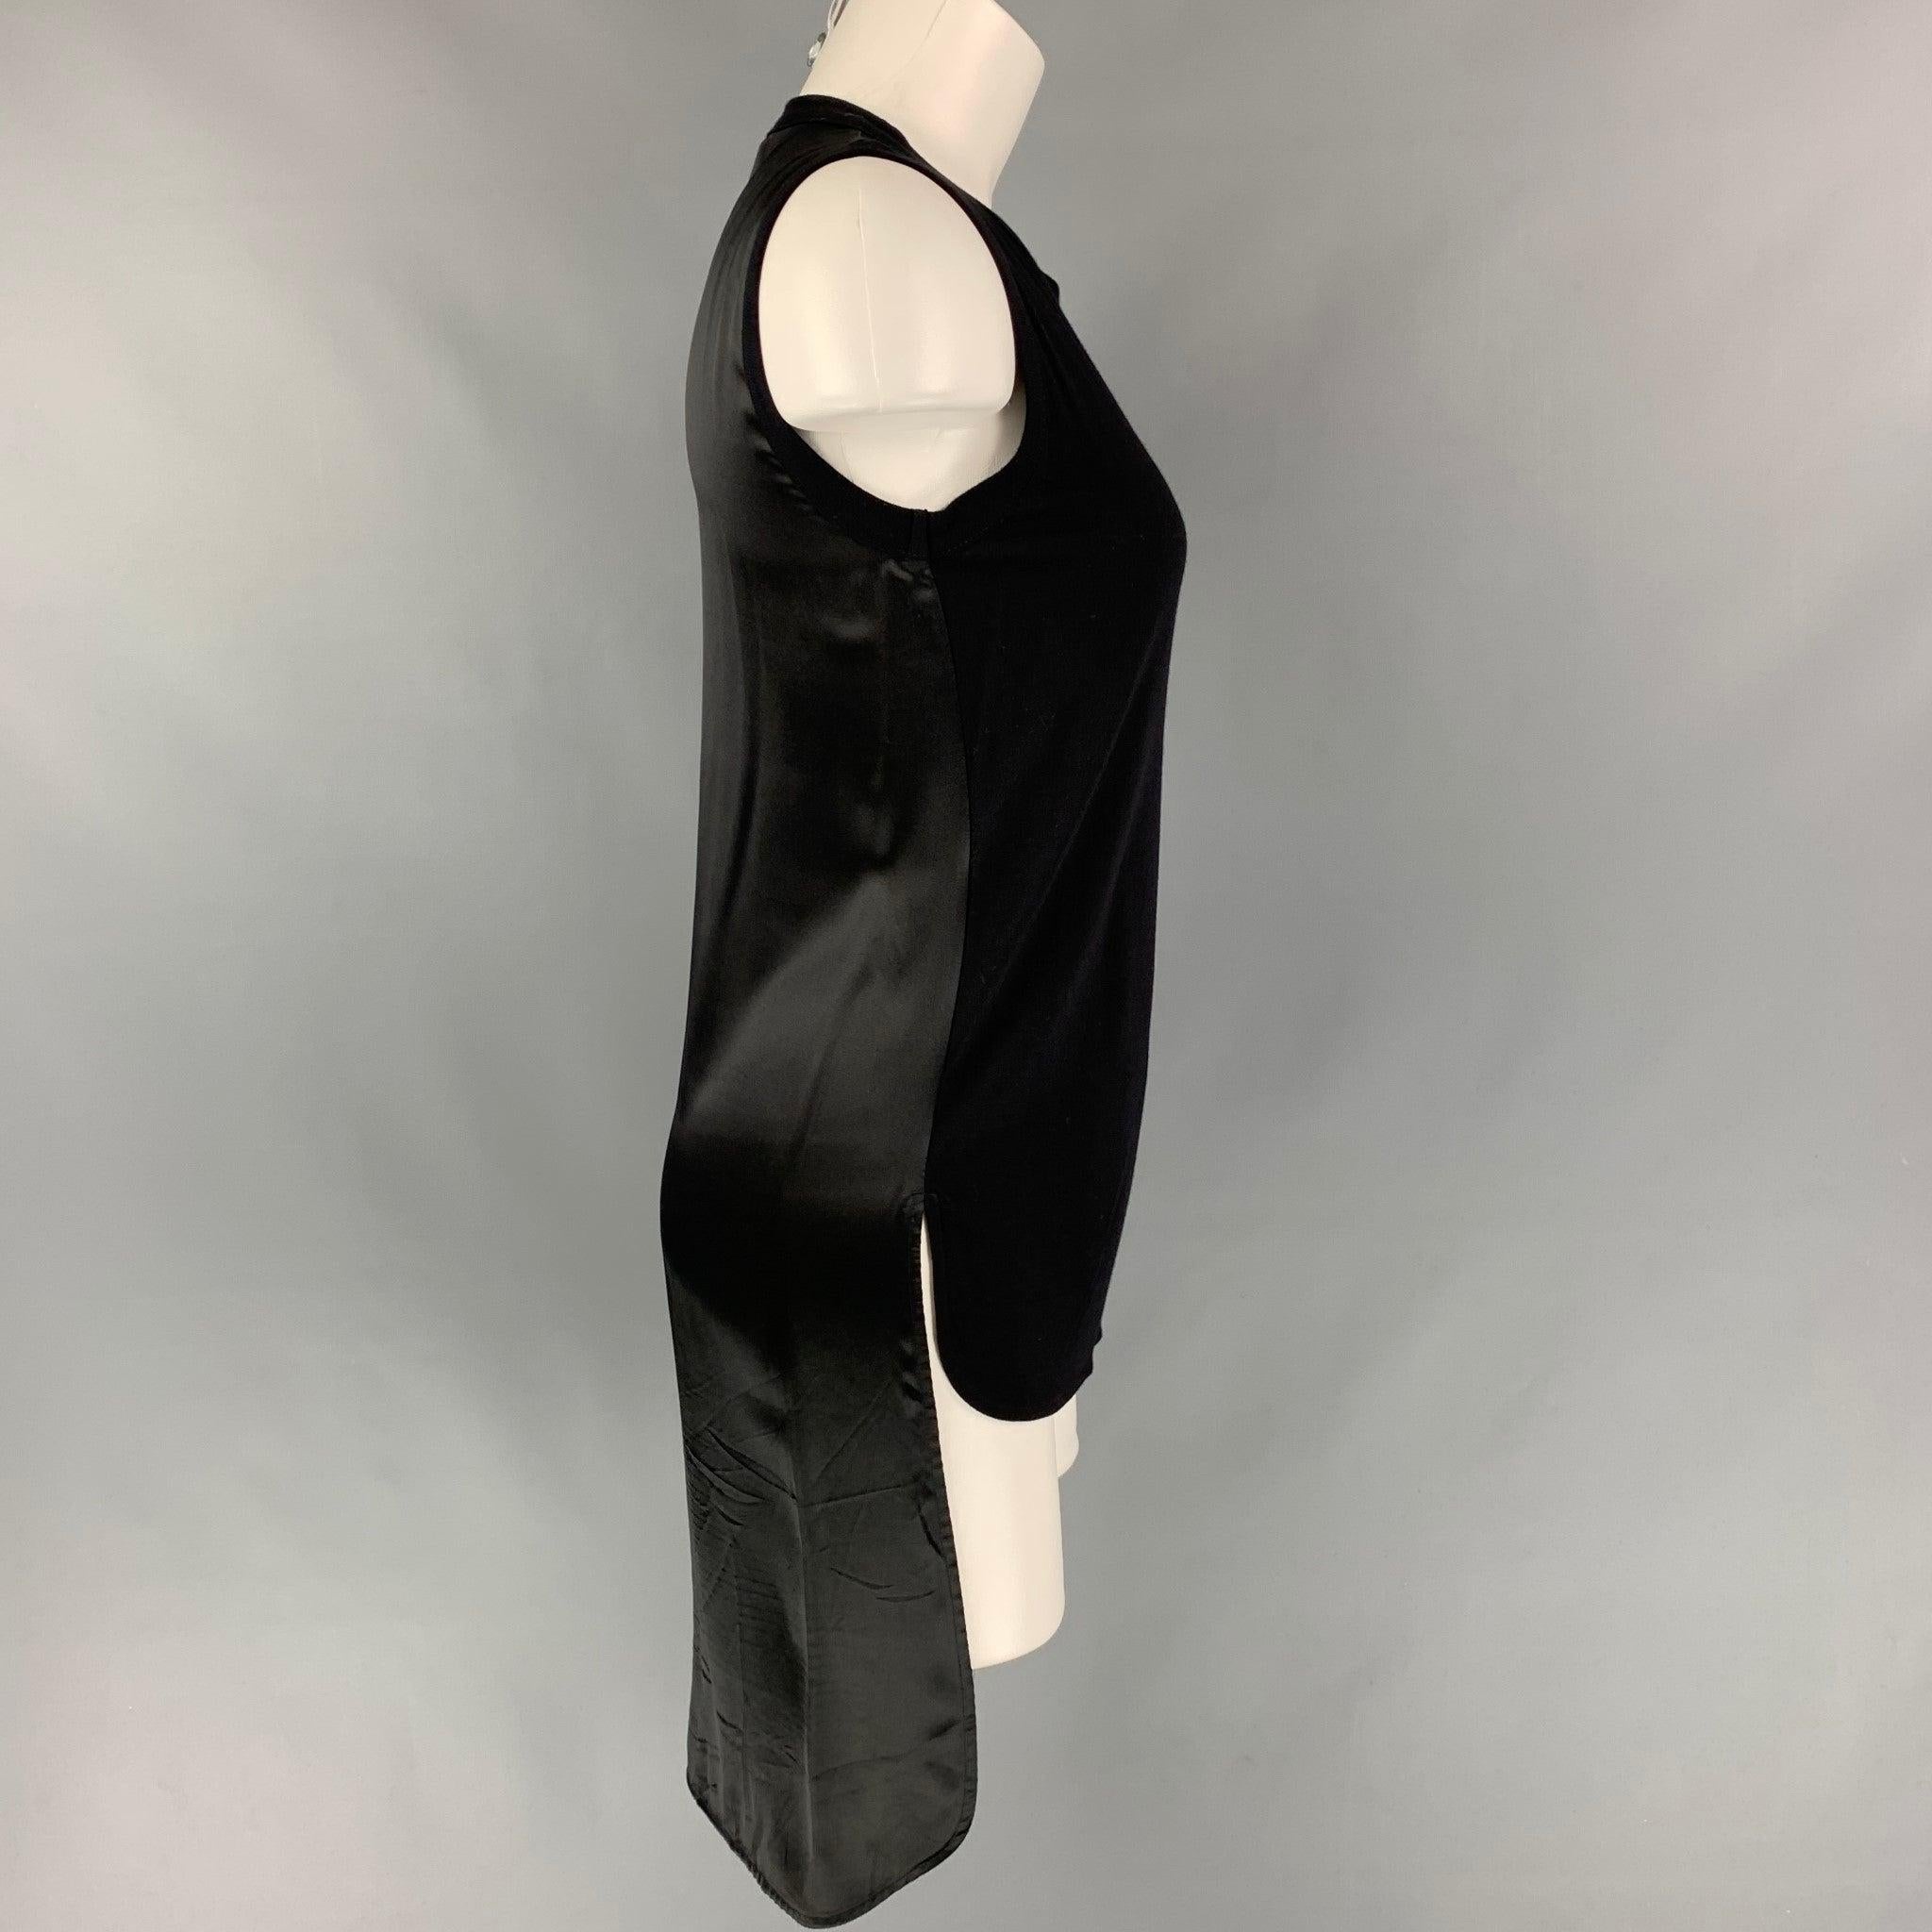 Le haut de robe GIAMBATTISTA VALLI est présenté dans un tissu noir en viscose/soie et présente un style sans manches, un dos long et une encolure ras du cou. Fabriquées en Italie.
Très bien
Etat d'occasion. 

Marqué :   38/XXS 

Mesures : 
 
Épaule